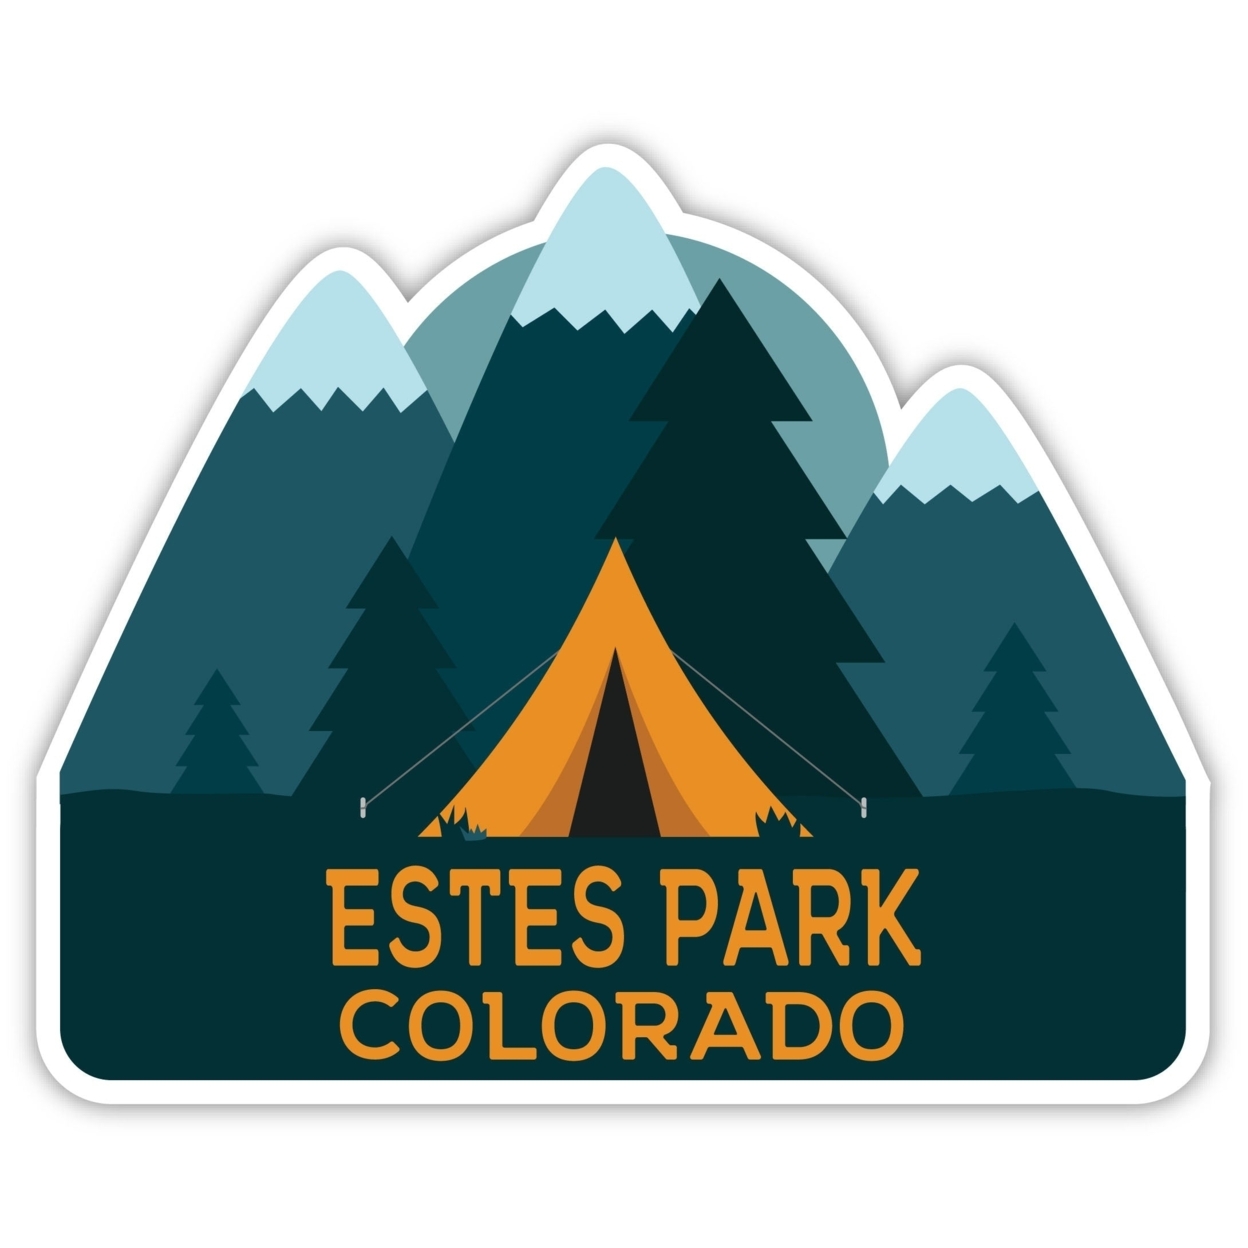 Estes Park Colorado Souvenir Decorative Stickers (Choose Theme And Size) - Single Unit, 2-Inch, Bear